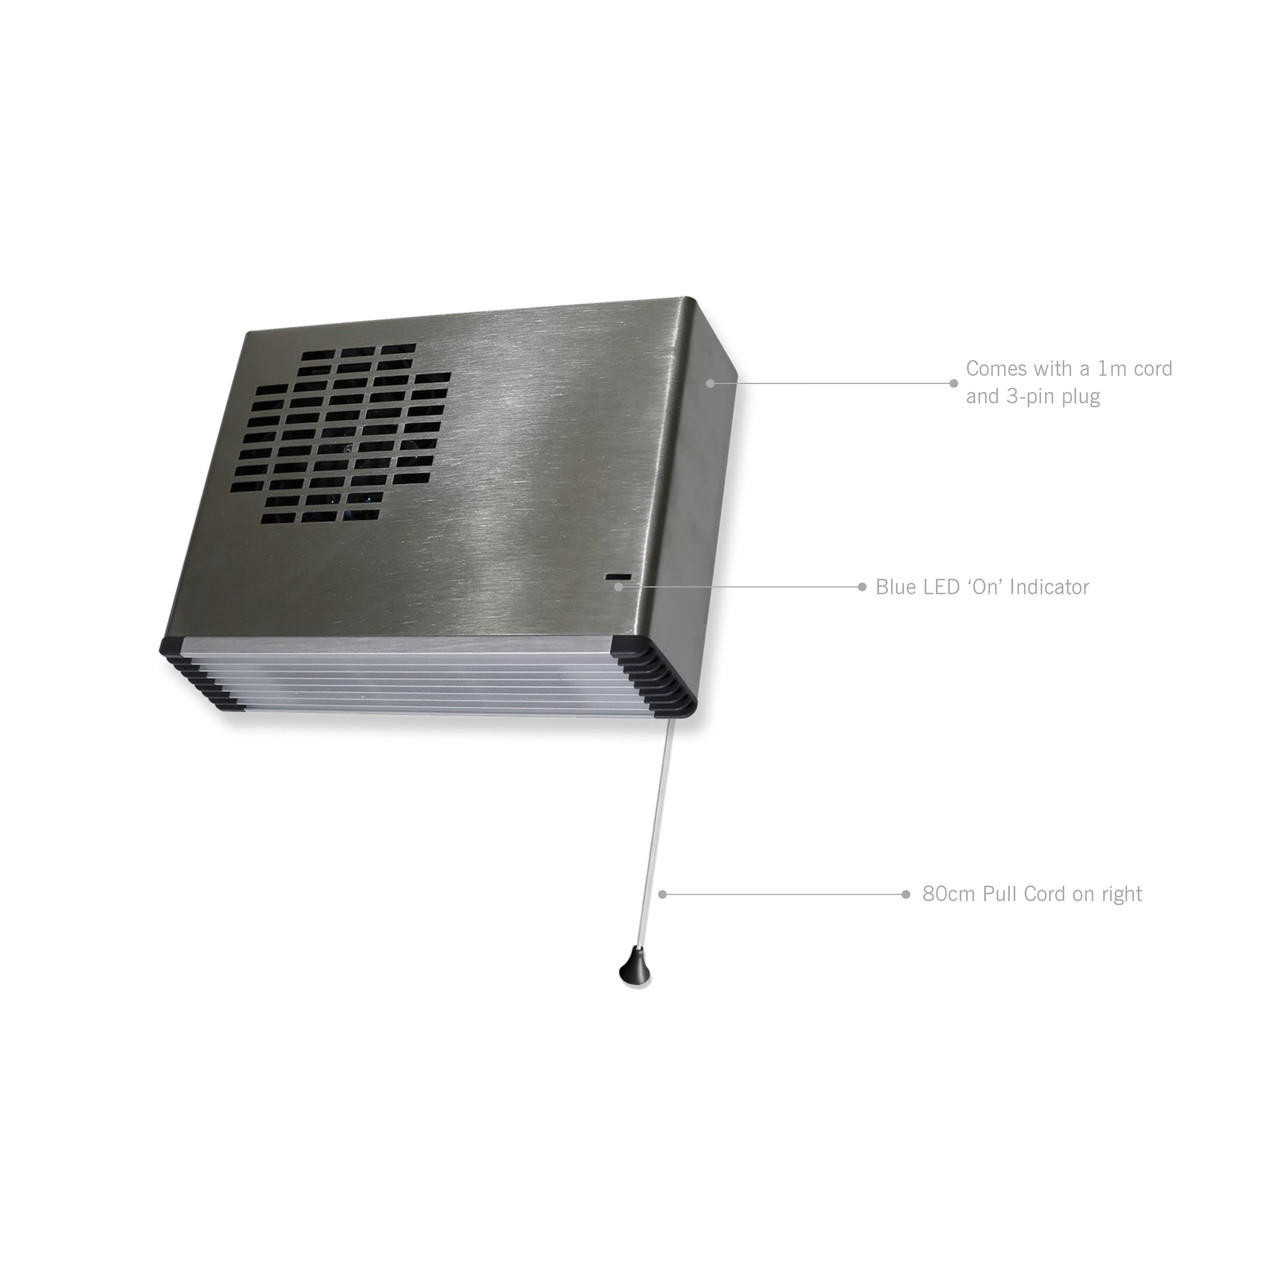 Thermofan Fan Heater TF2400S